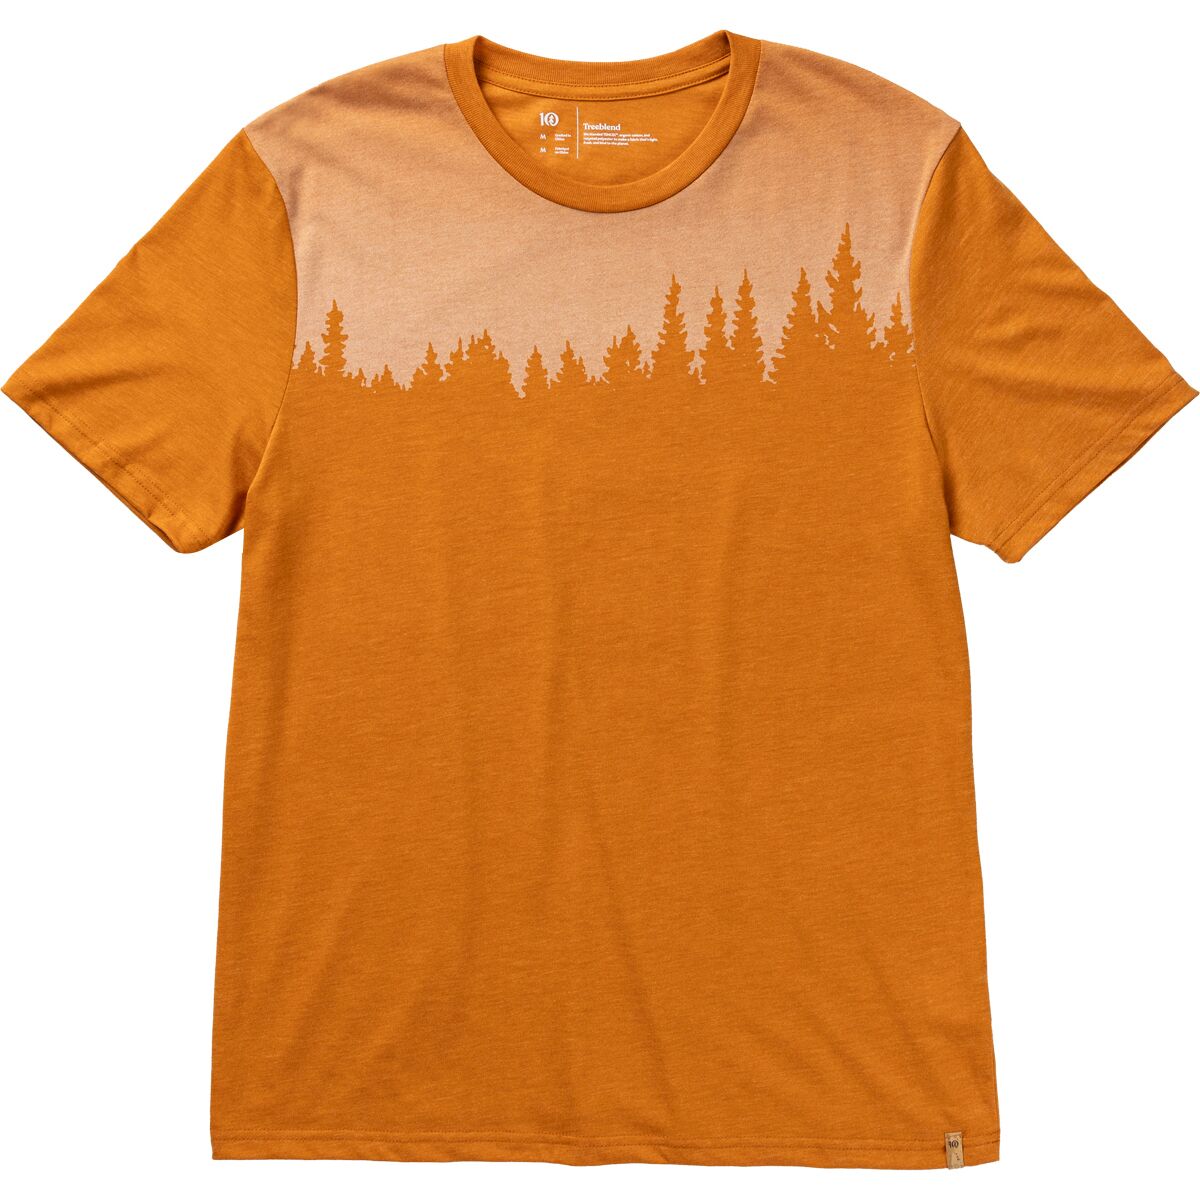 Tentree Juniper T-Shirt - Men's